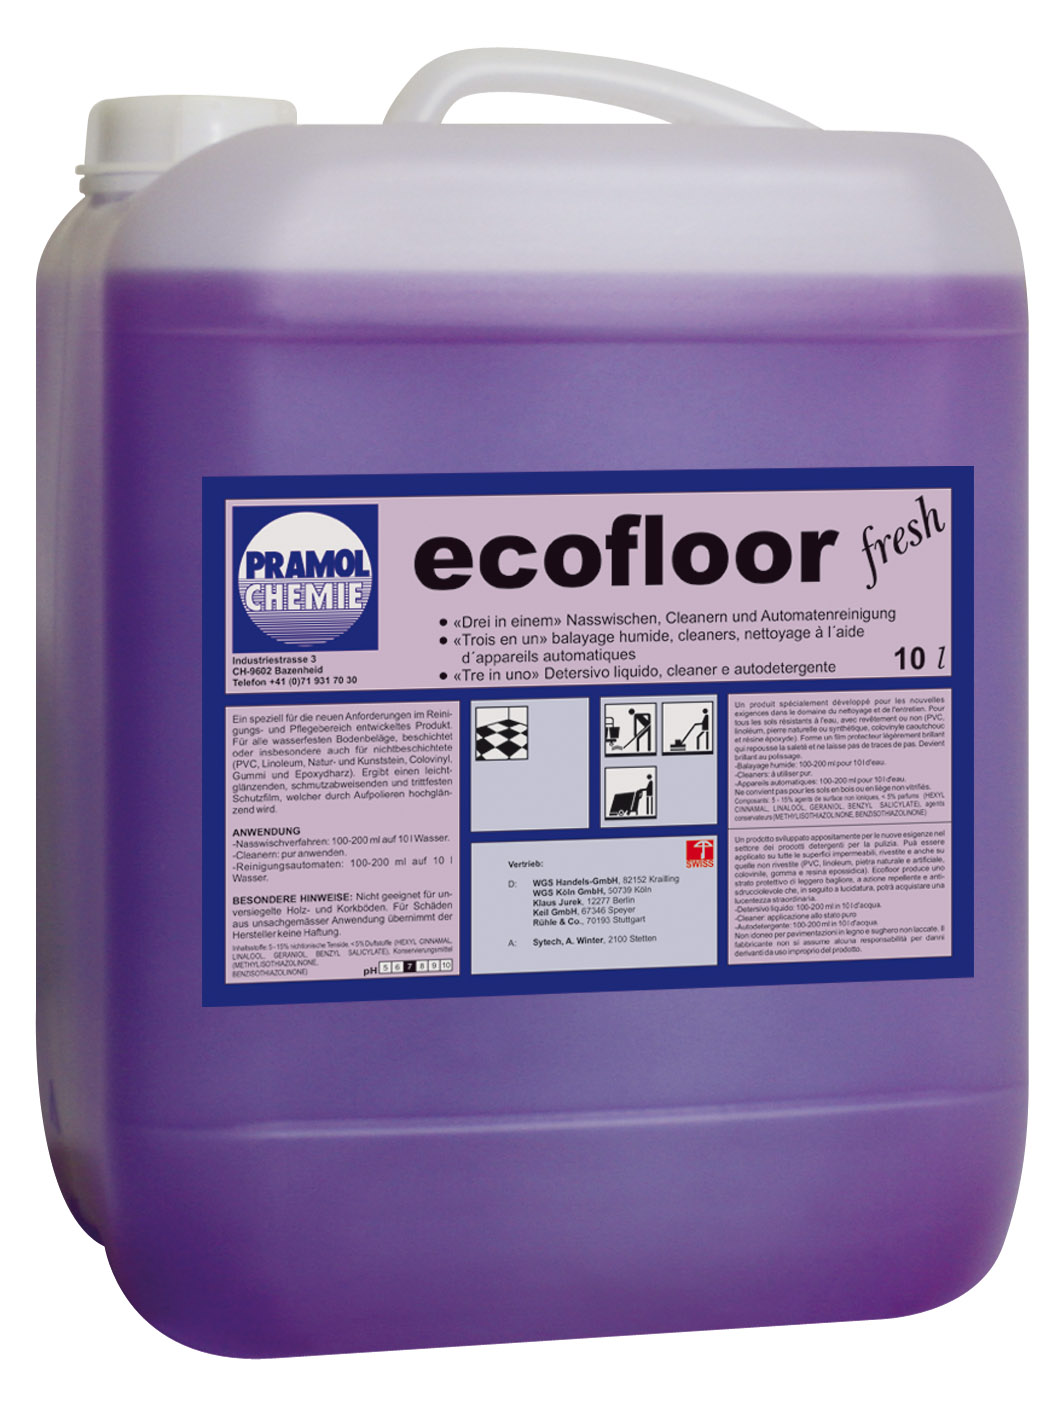 Pramol ECOFLOOR fresh, Wischpflege auf Polymerbasis, erfüllt DIN18032, 10 Liter